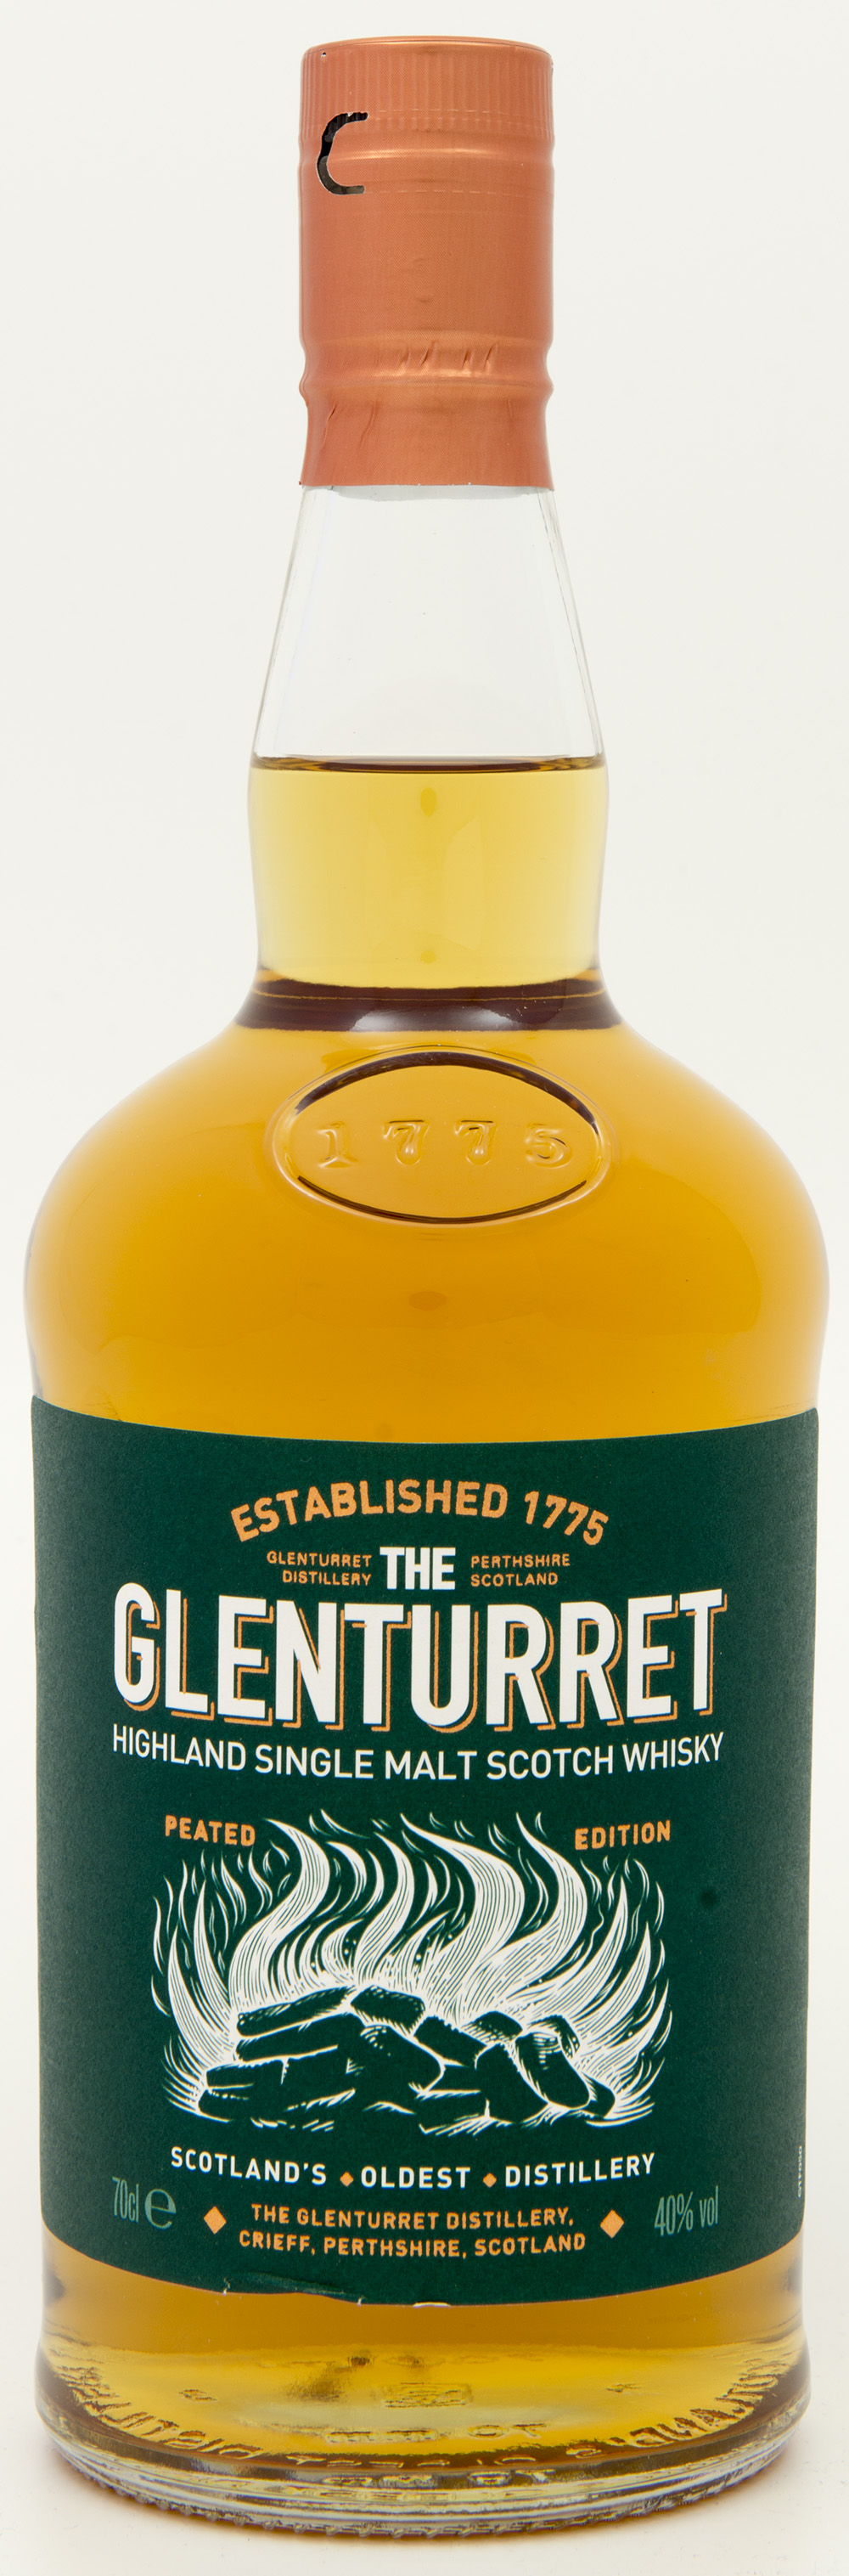 Billede: DSC_8179 - The Glenturret - Peated edition - bottle front.jpg